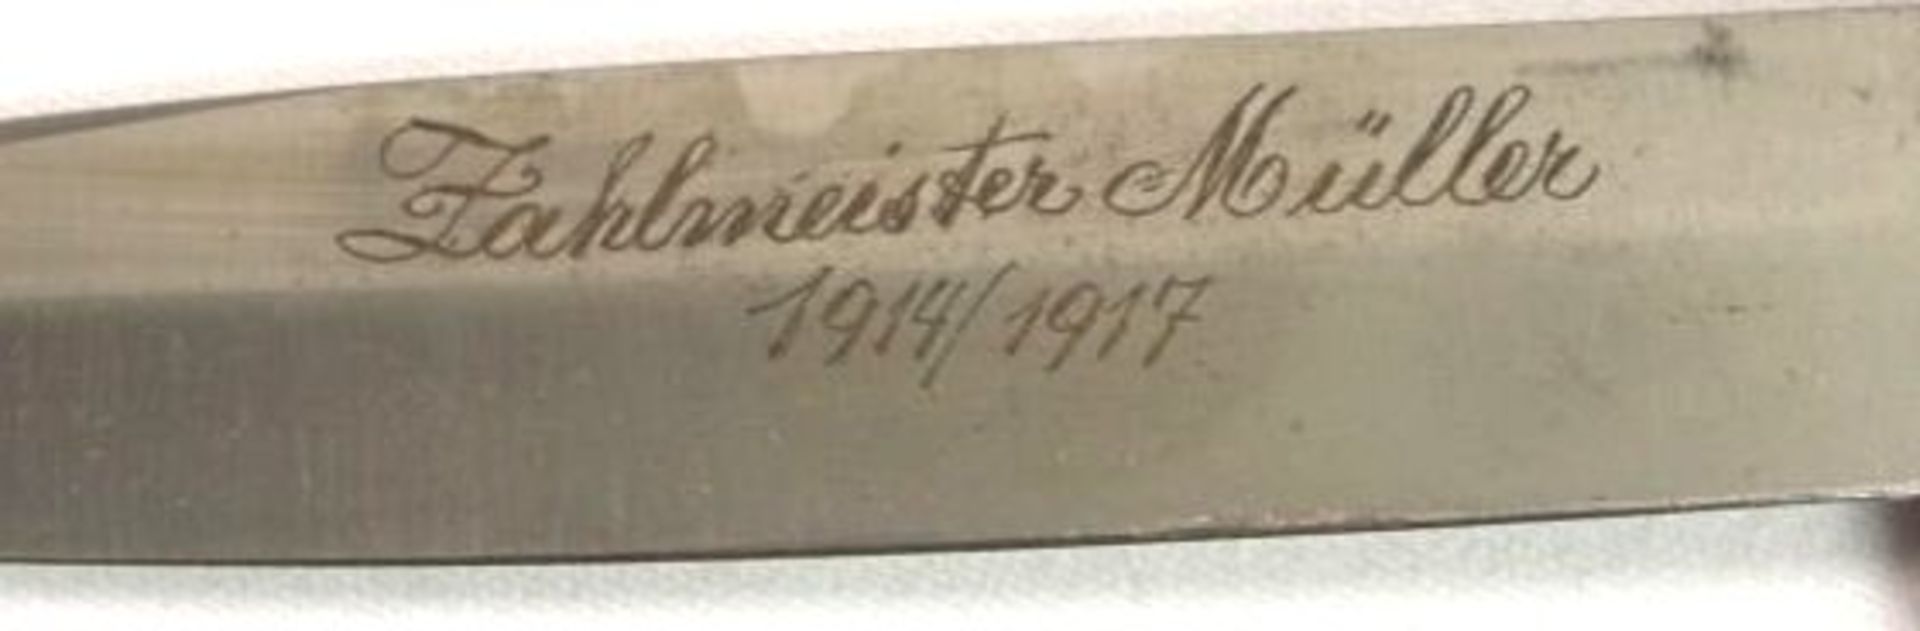 Jagdmesser in Lederscheide, Klinge mit Gravur "Zahlmeister Müller 1914/17", Horngriff, L-30cm. - Bild 2 aus 3